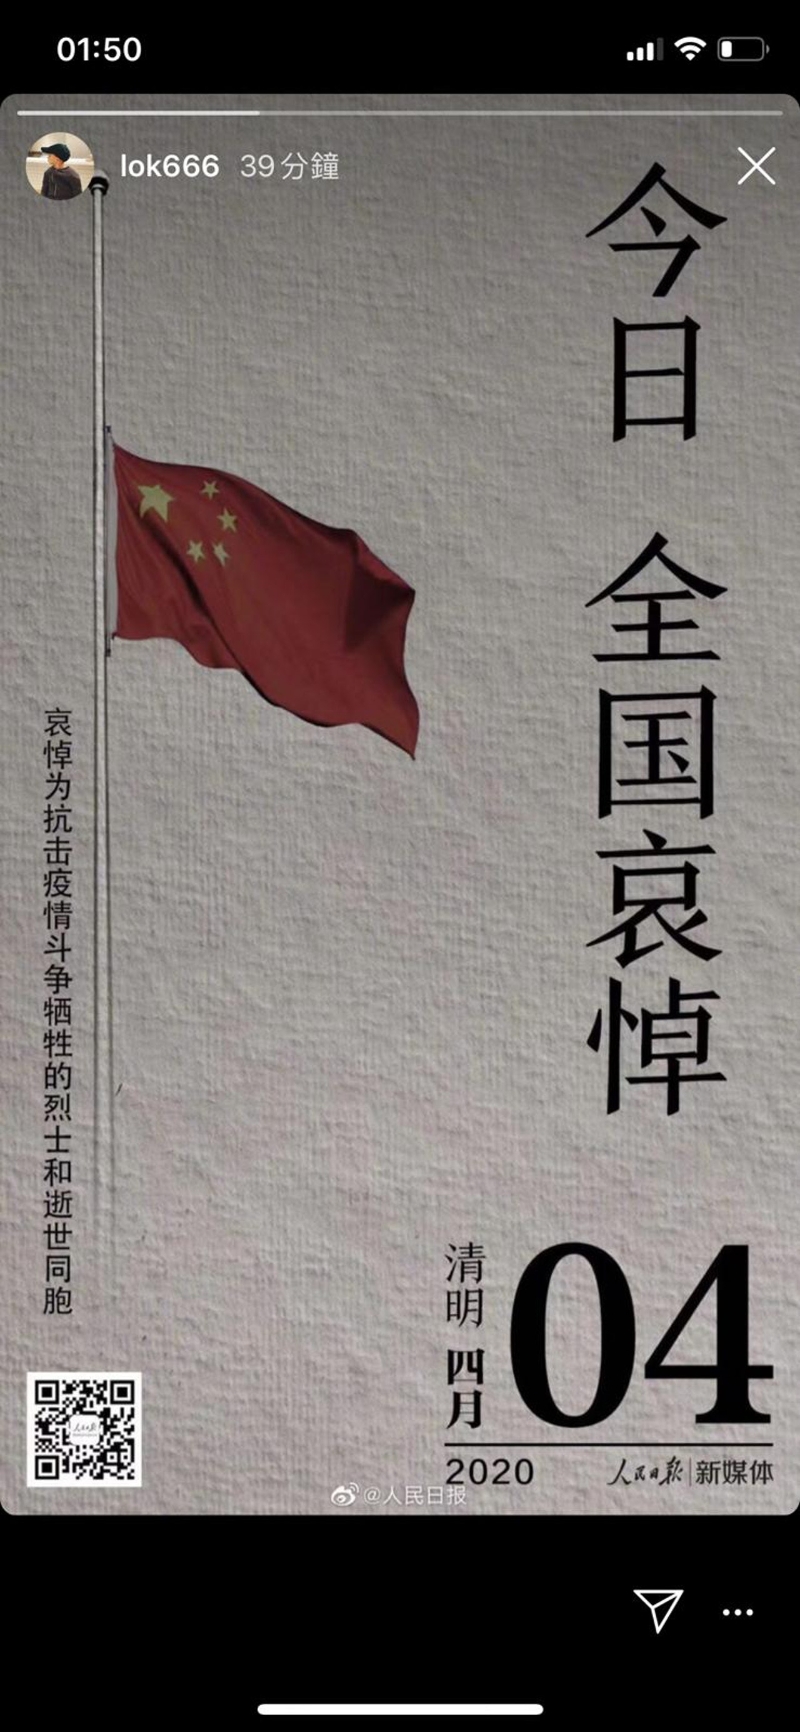 余文乐在IG限时动态贴上“今日 全国哀悼”的照片。